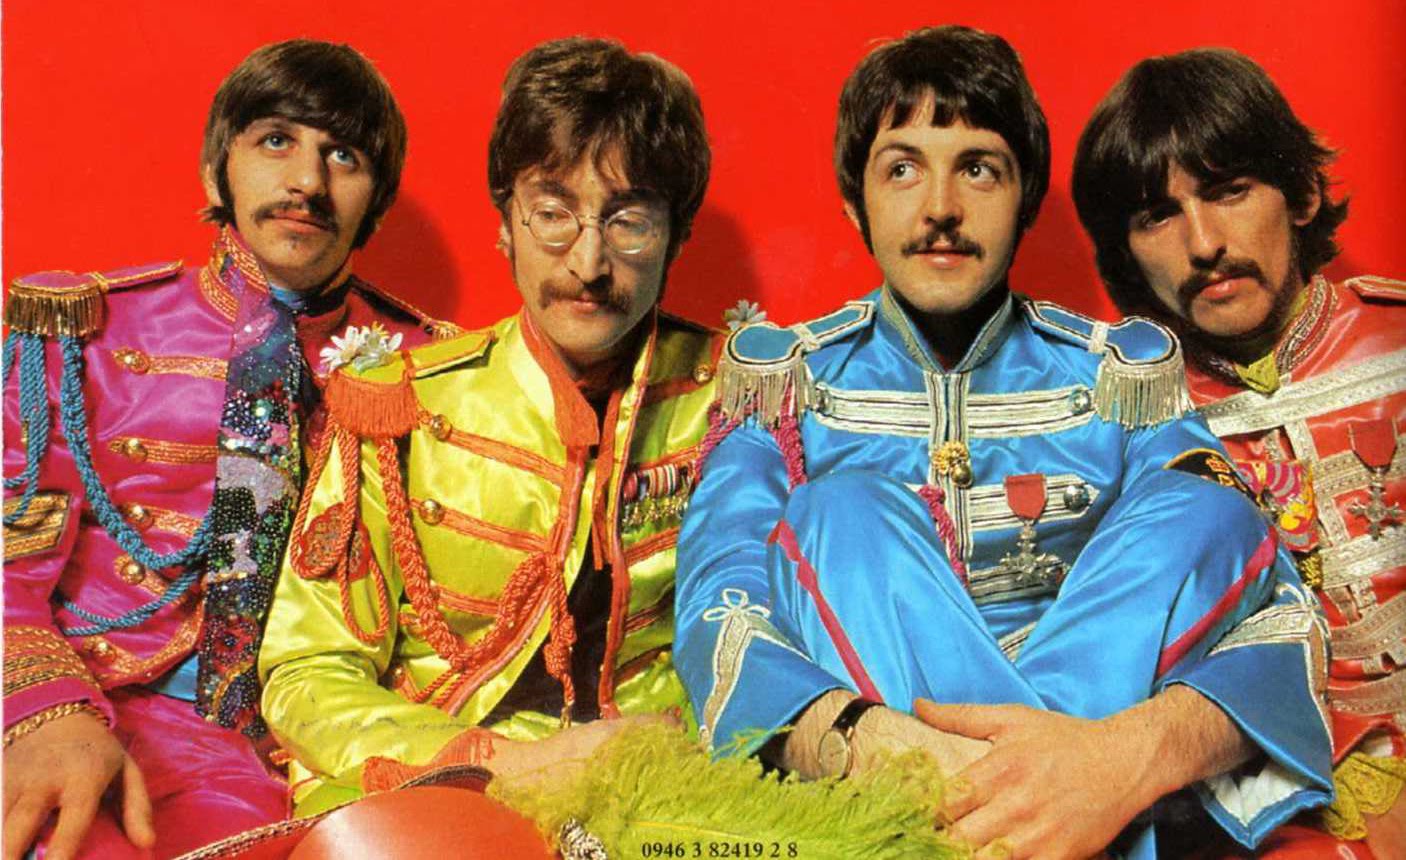 El British Council celebrará los 60 años de ‘Sgt Pepper’s Lonely Hearts Club Band’ de The Beatles. Cusica Plus.